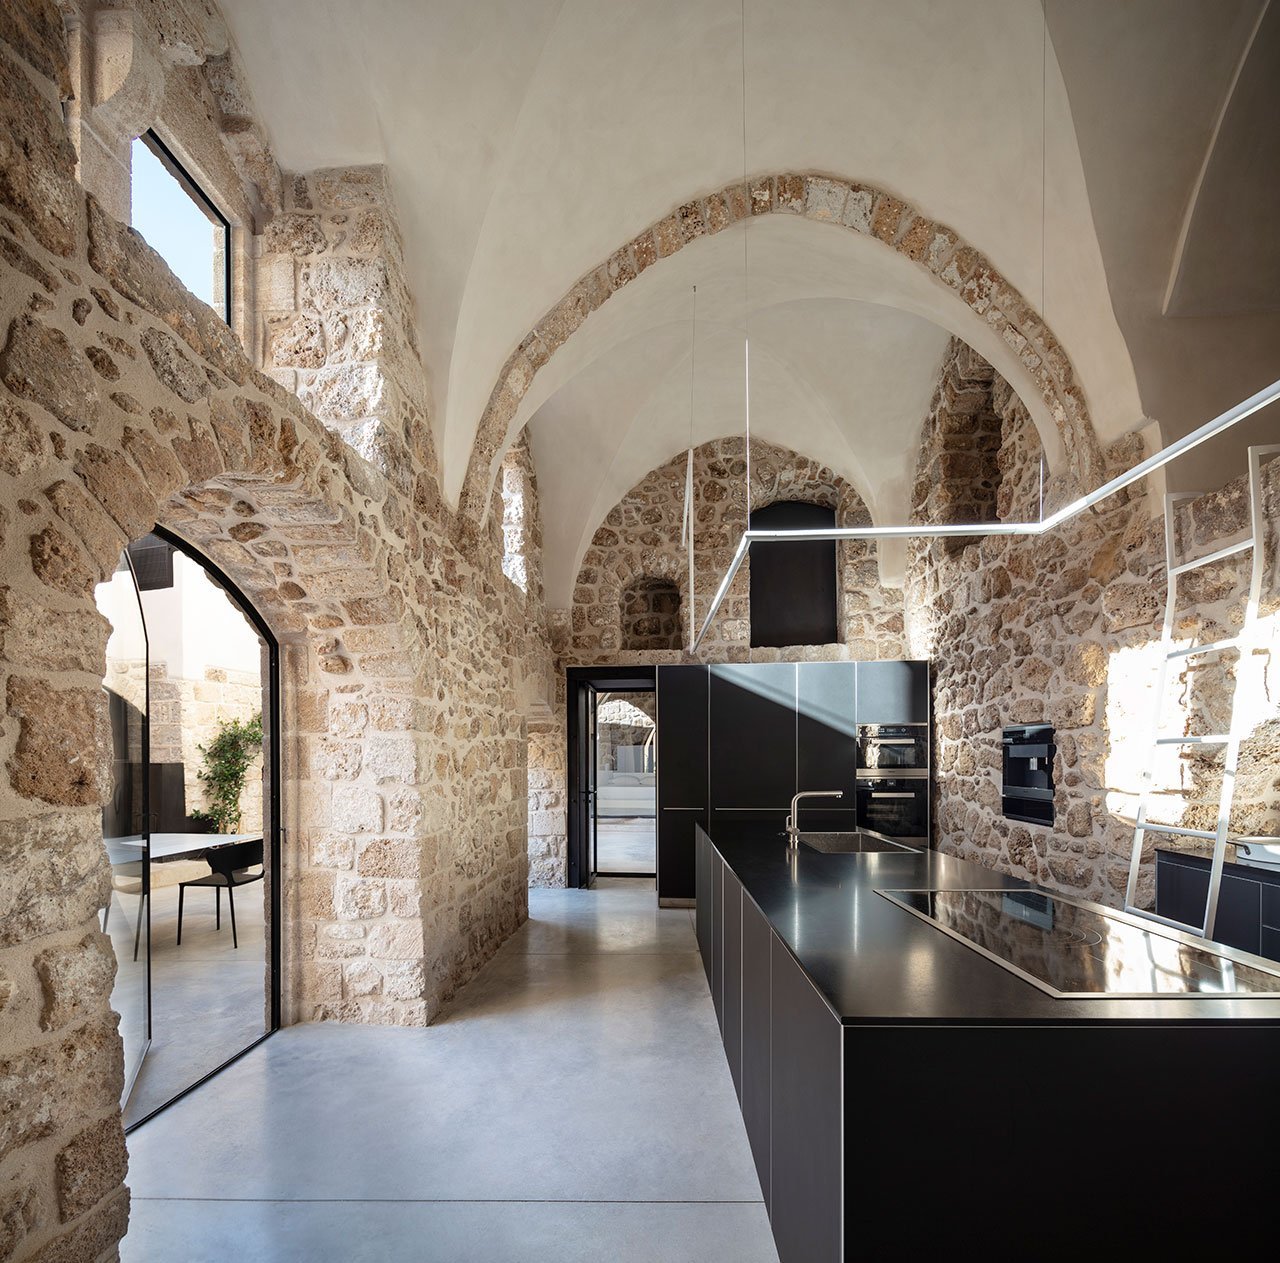 Casa moderna de piedra y ladrillo reformada en Tel Aviv por el arquitecto Pitsou Kedem cocina